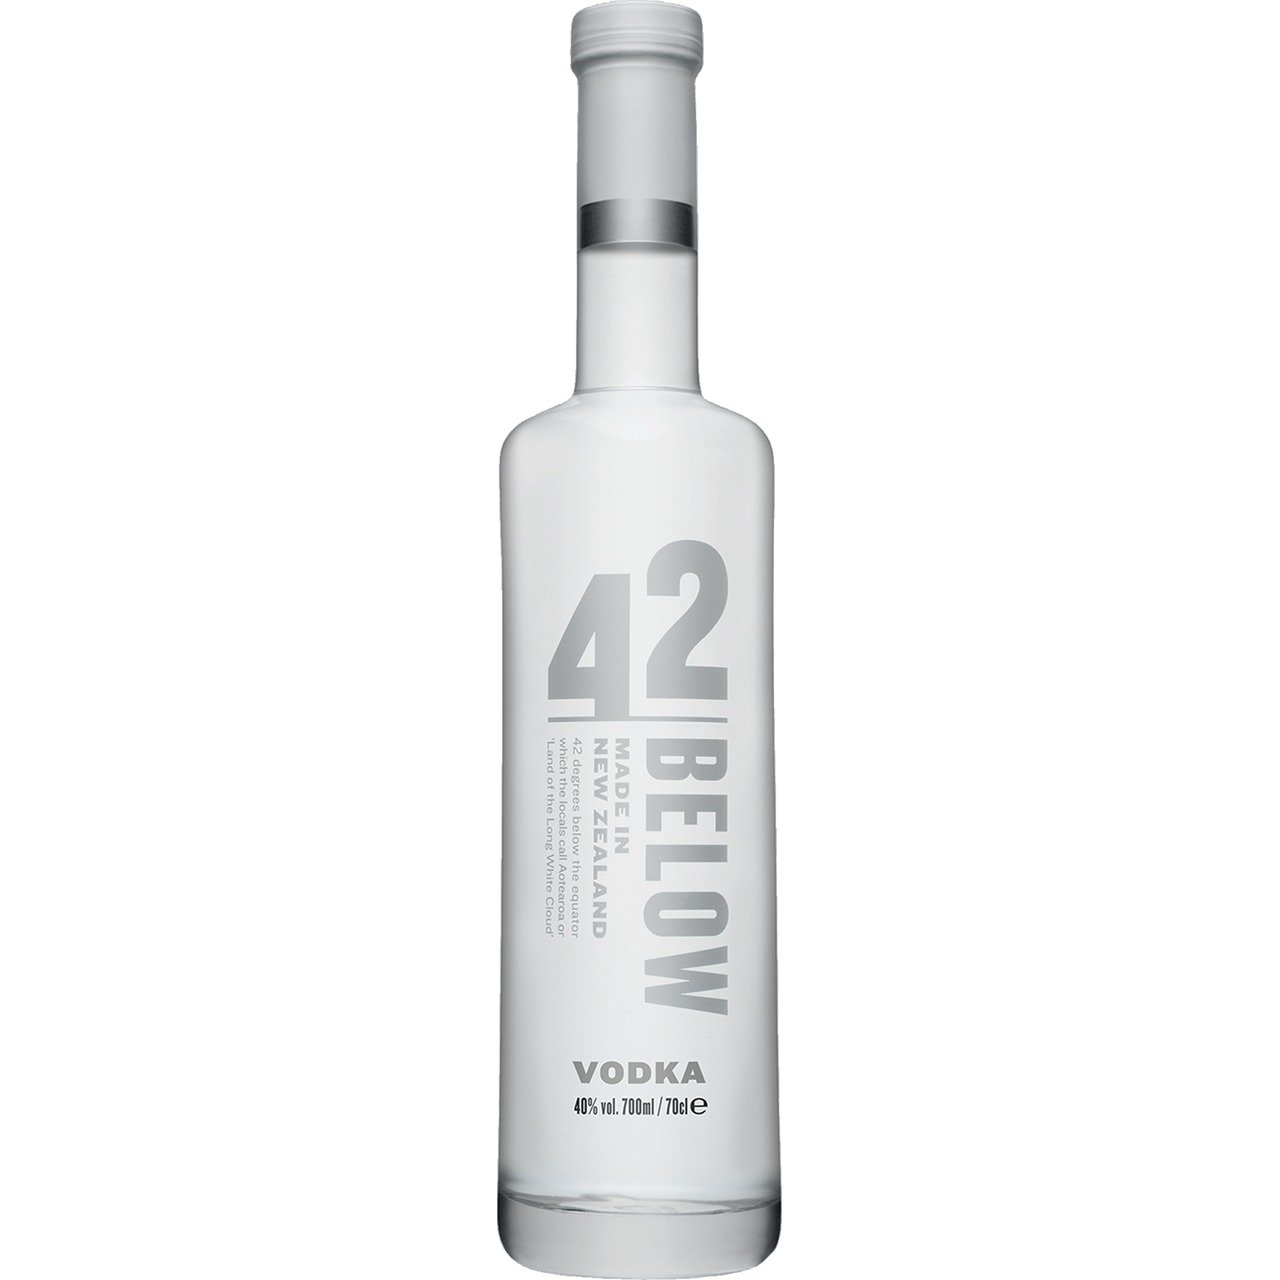 40% Danzka Distilled Vodka ORIGINAL Premium Vol. 1l